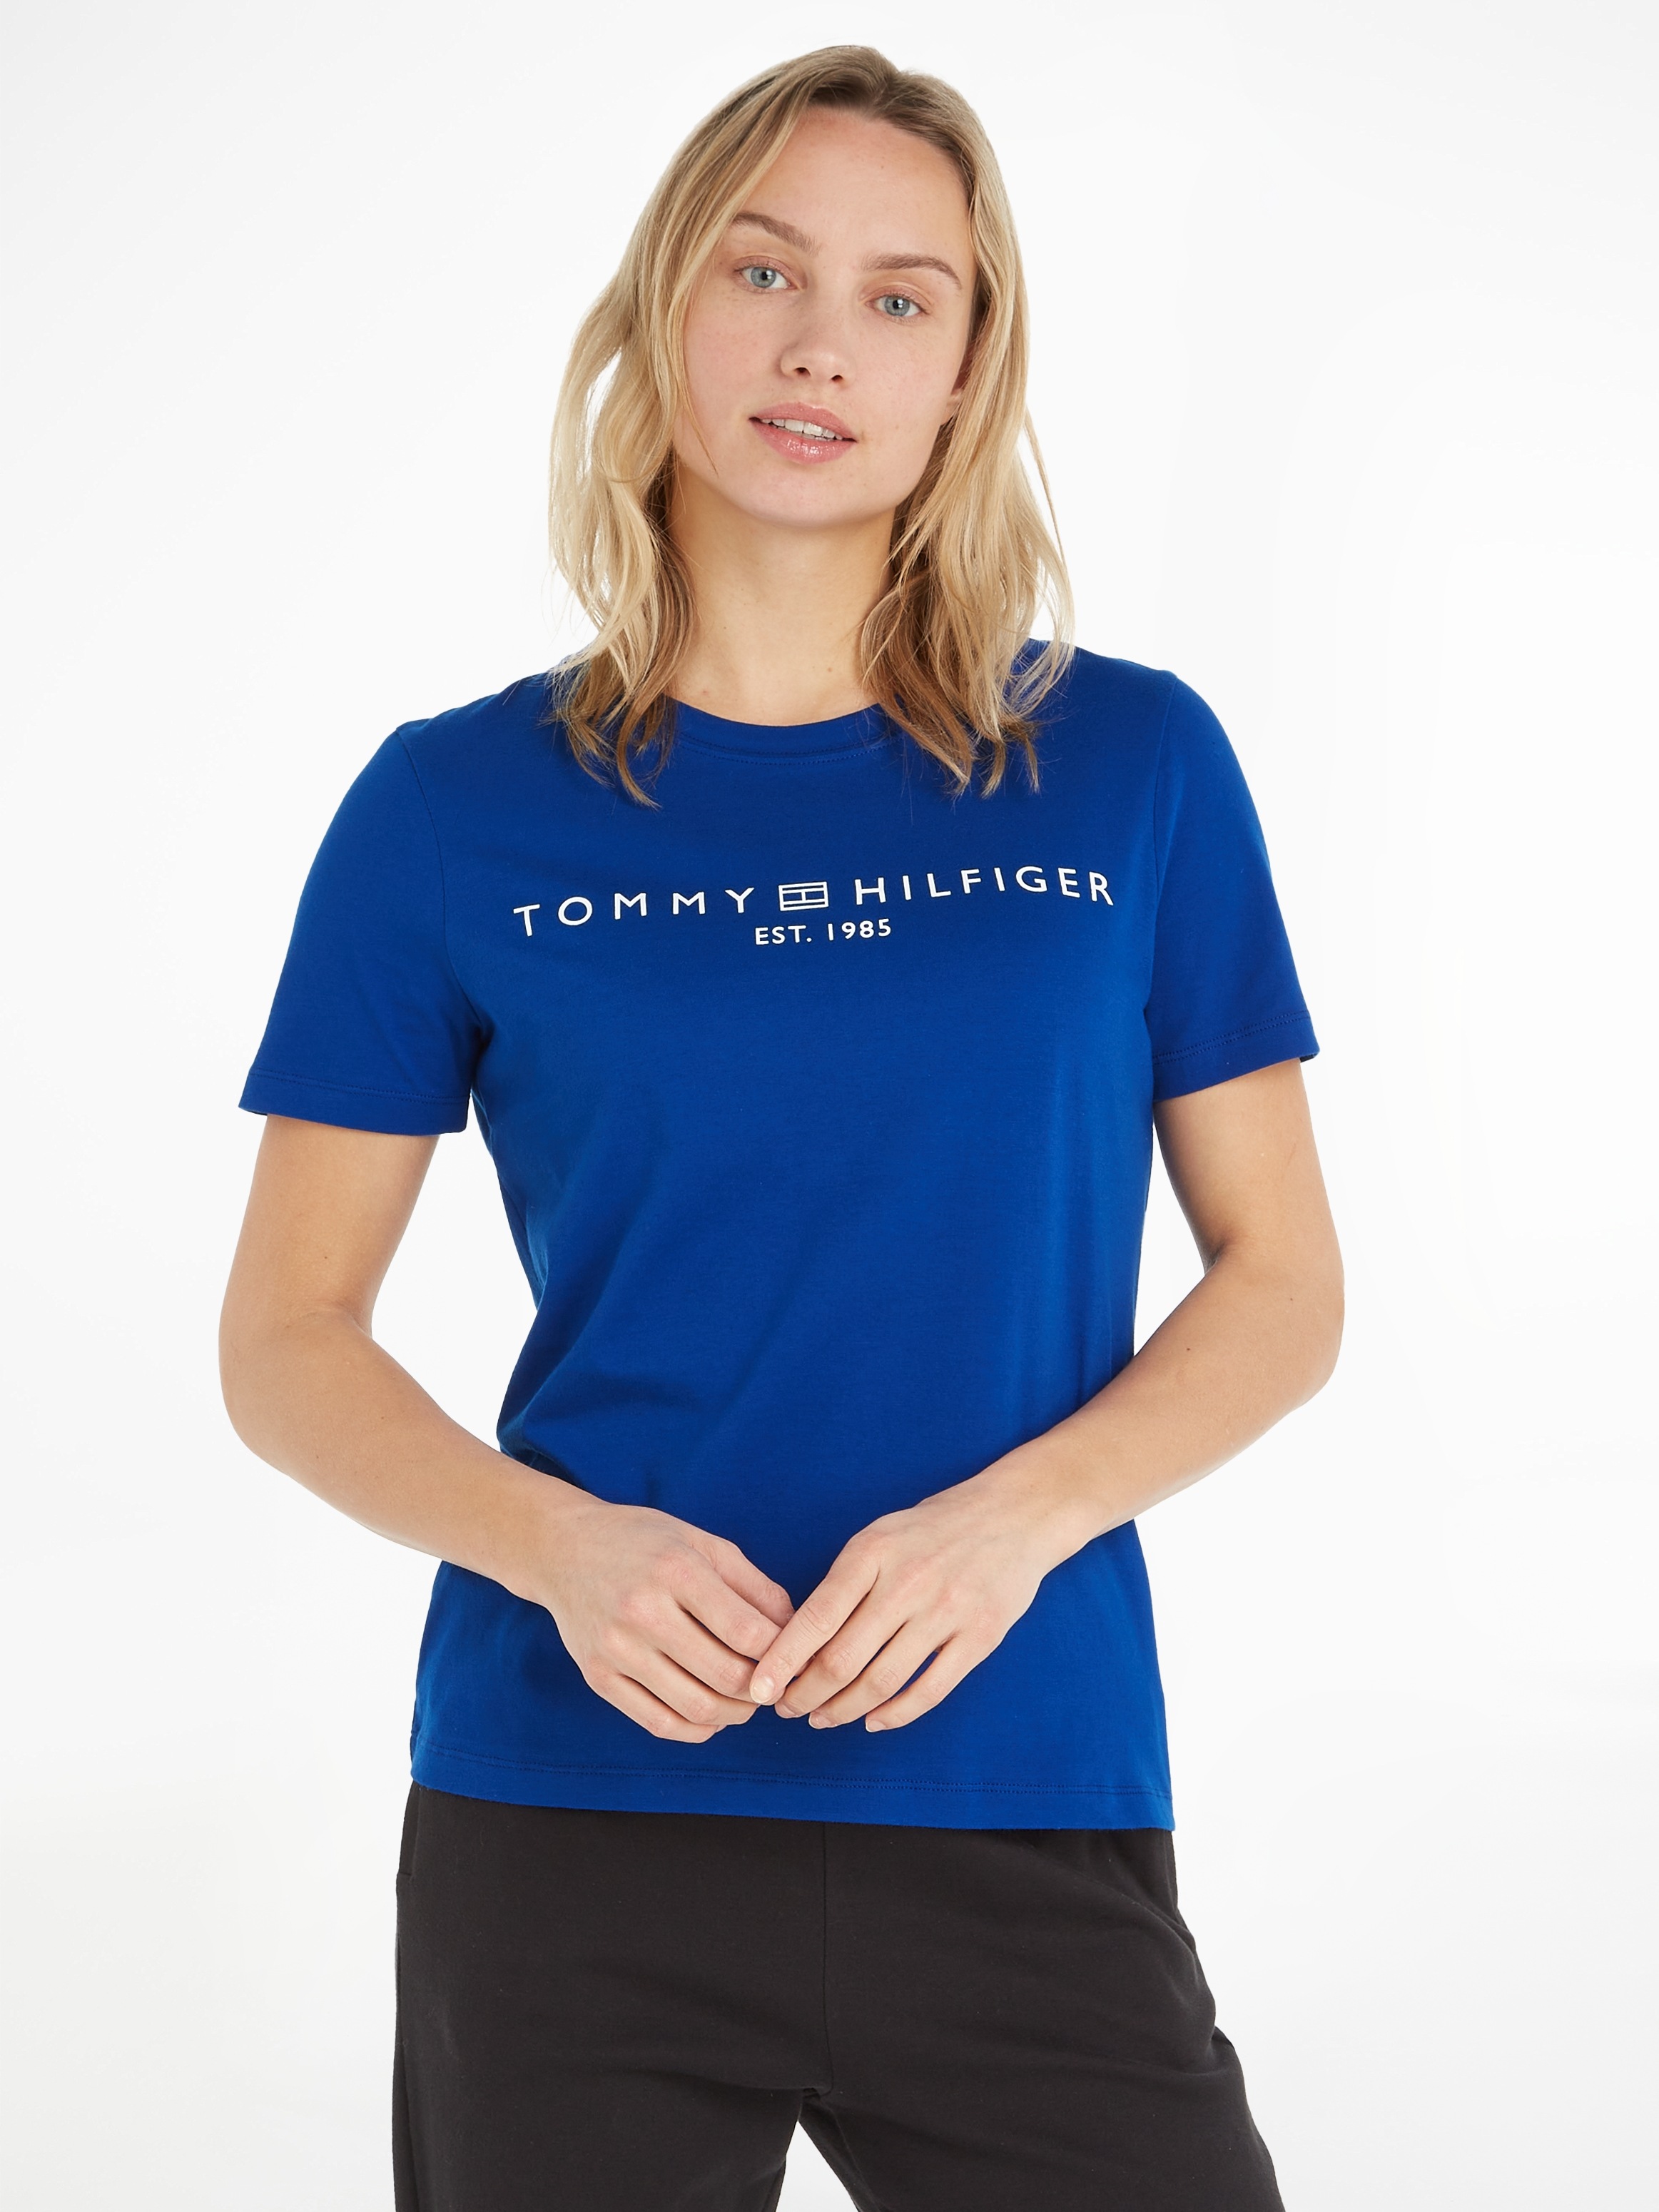 Brust Markenlabel Hilfiger Tommy kaufen T-Shirt, | auf BAUR der online mit